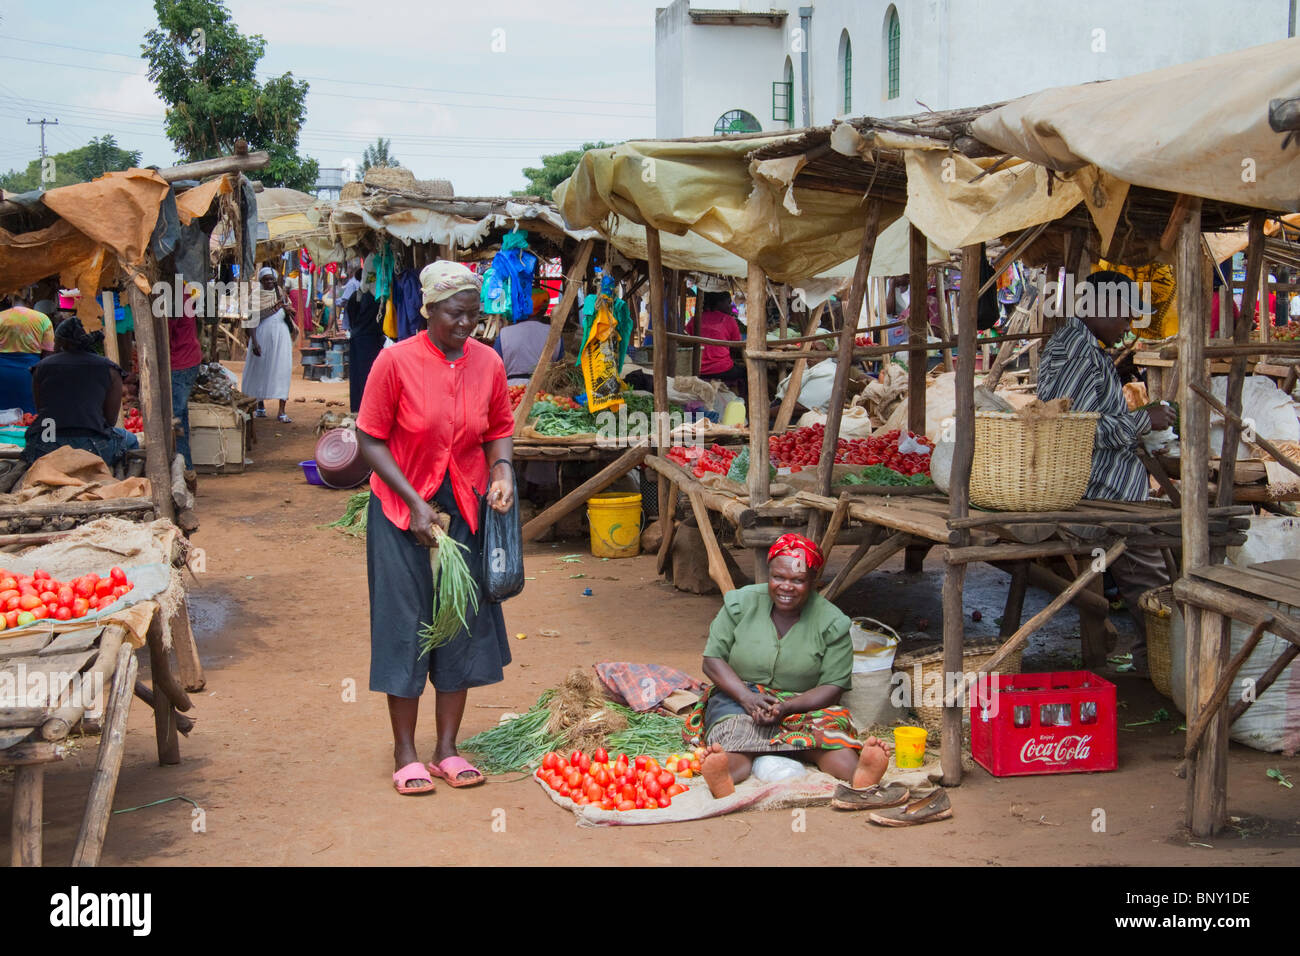 Ein Dorf-Flohmarkt in Kenia Stockfoto